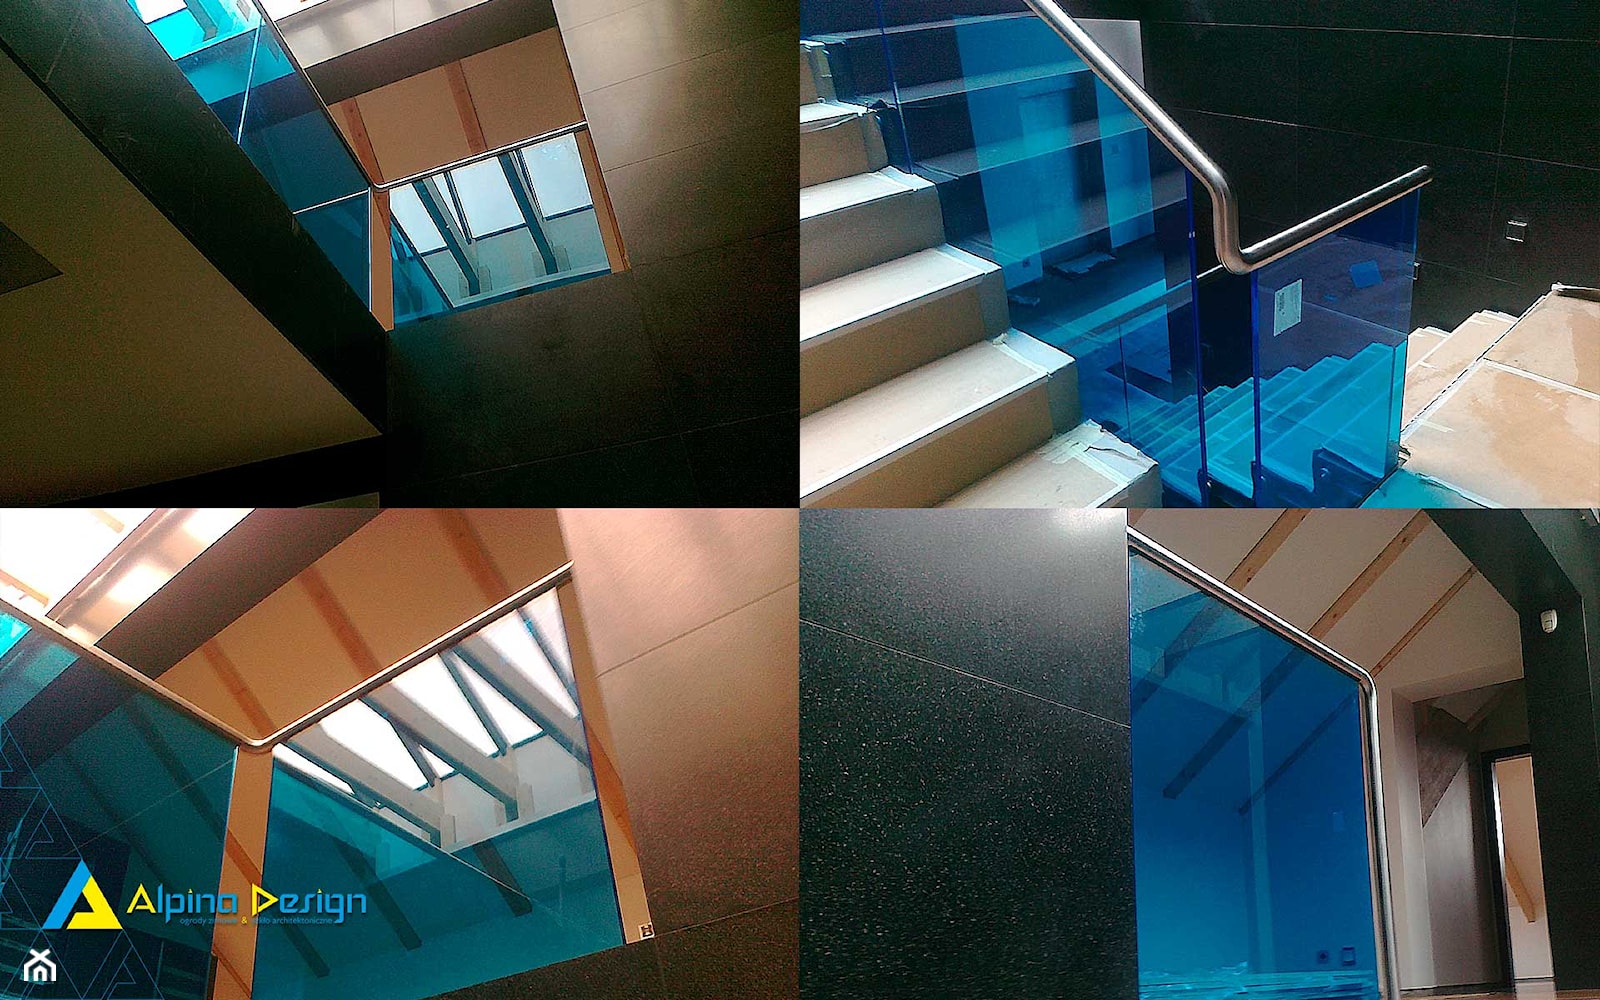 balustrady całoszklane, szkło architektoniczne - Schody, styl nowoczesny - zdjęcie od Alpina Ogrody Zimowe & Szkło Architektoniczne - Homebook